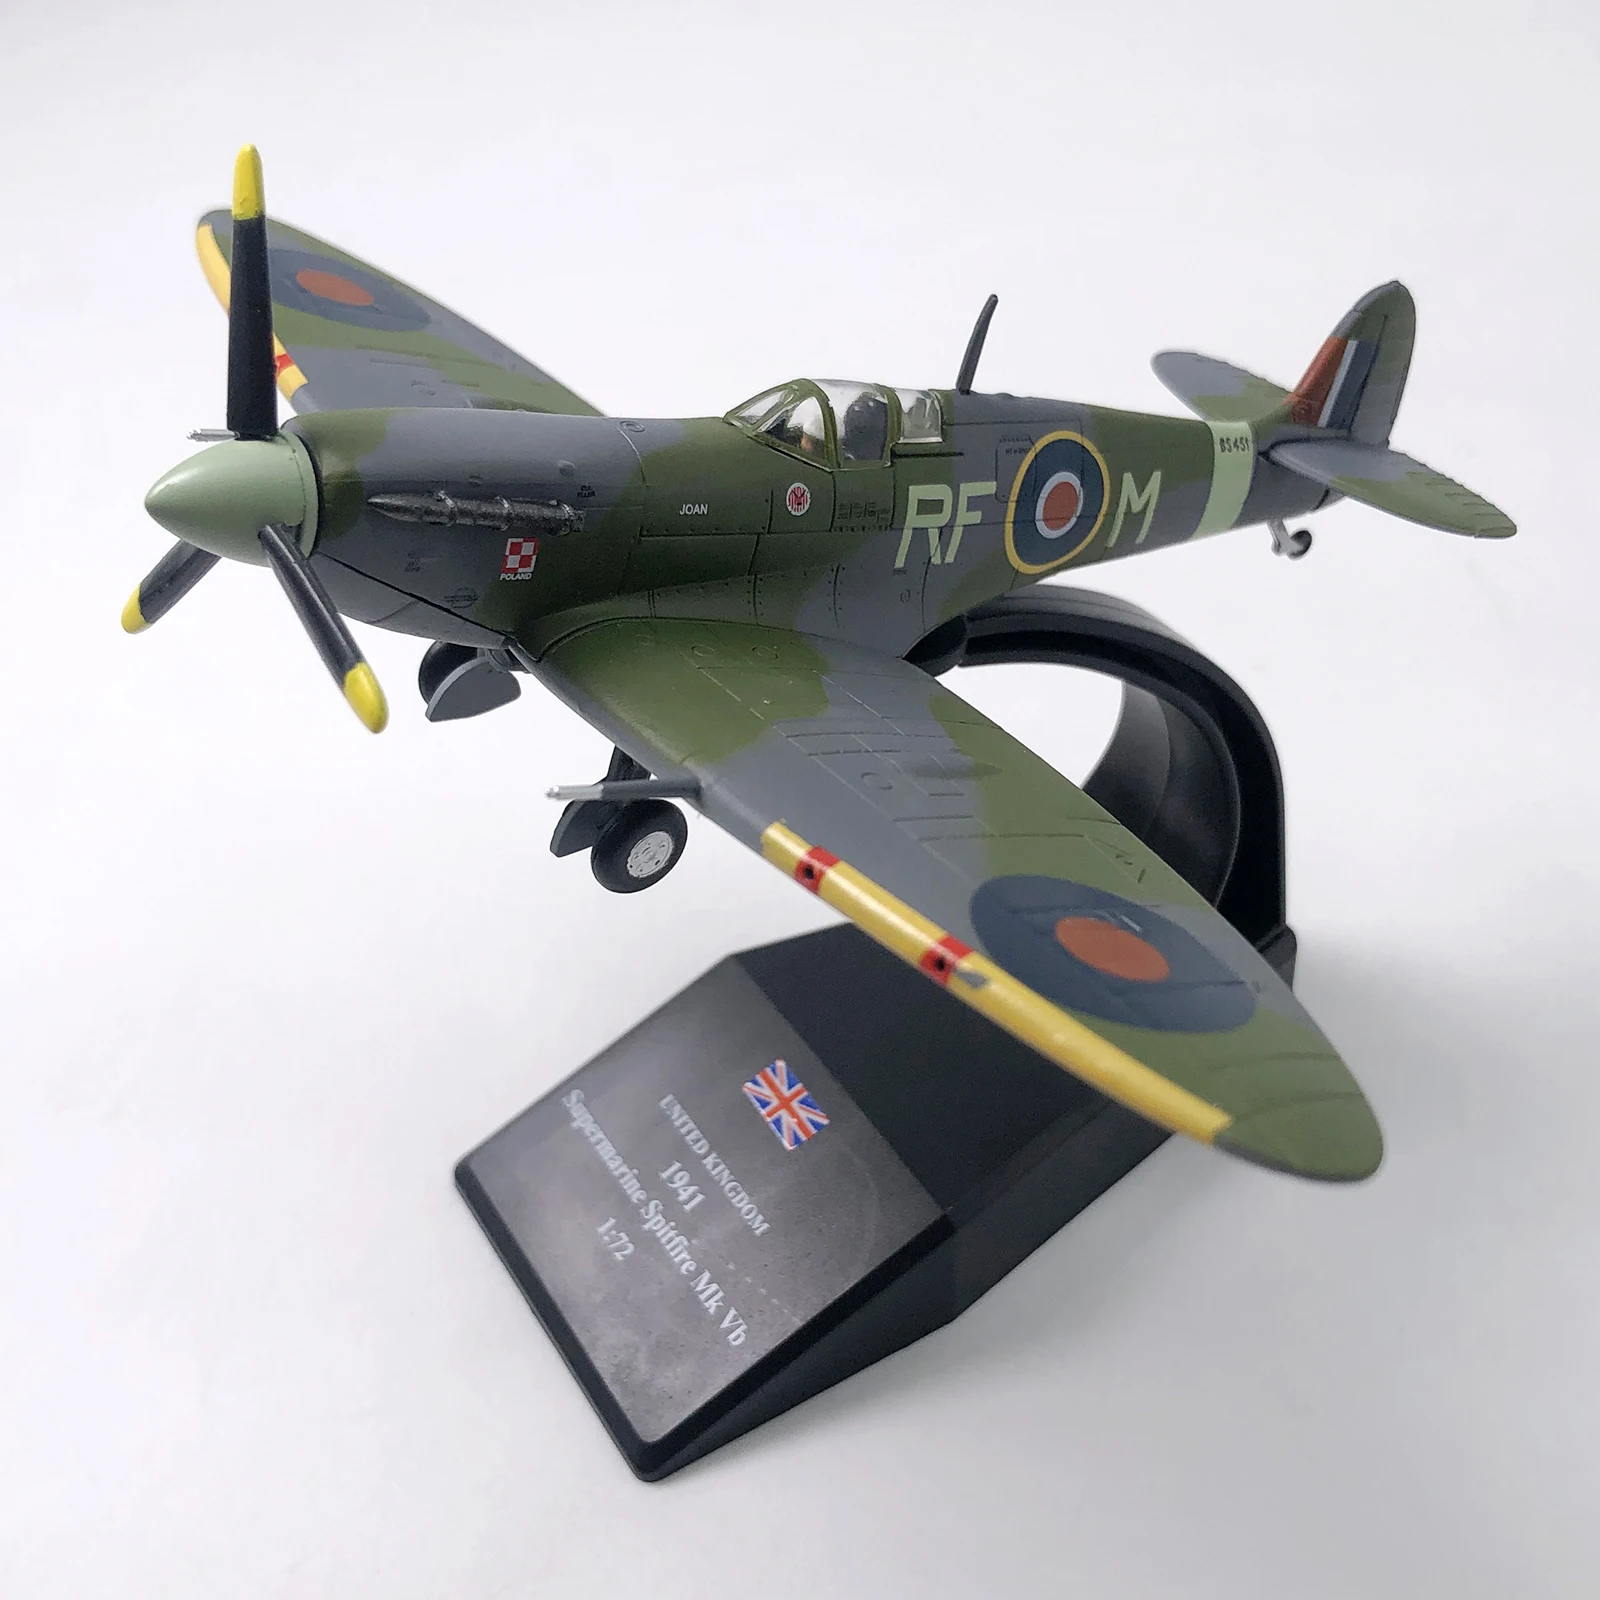 1/72 maßstab wwii british spitfire fighter flugzeug diecast metall flugzeug 